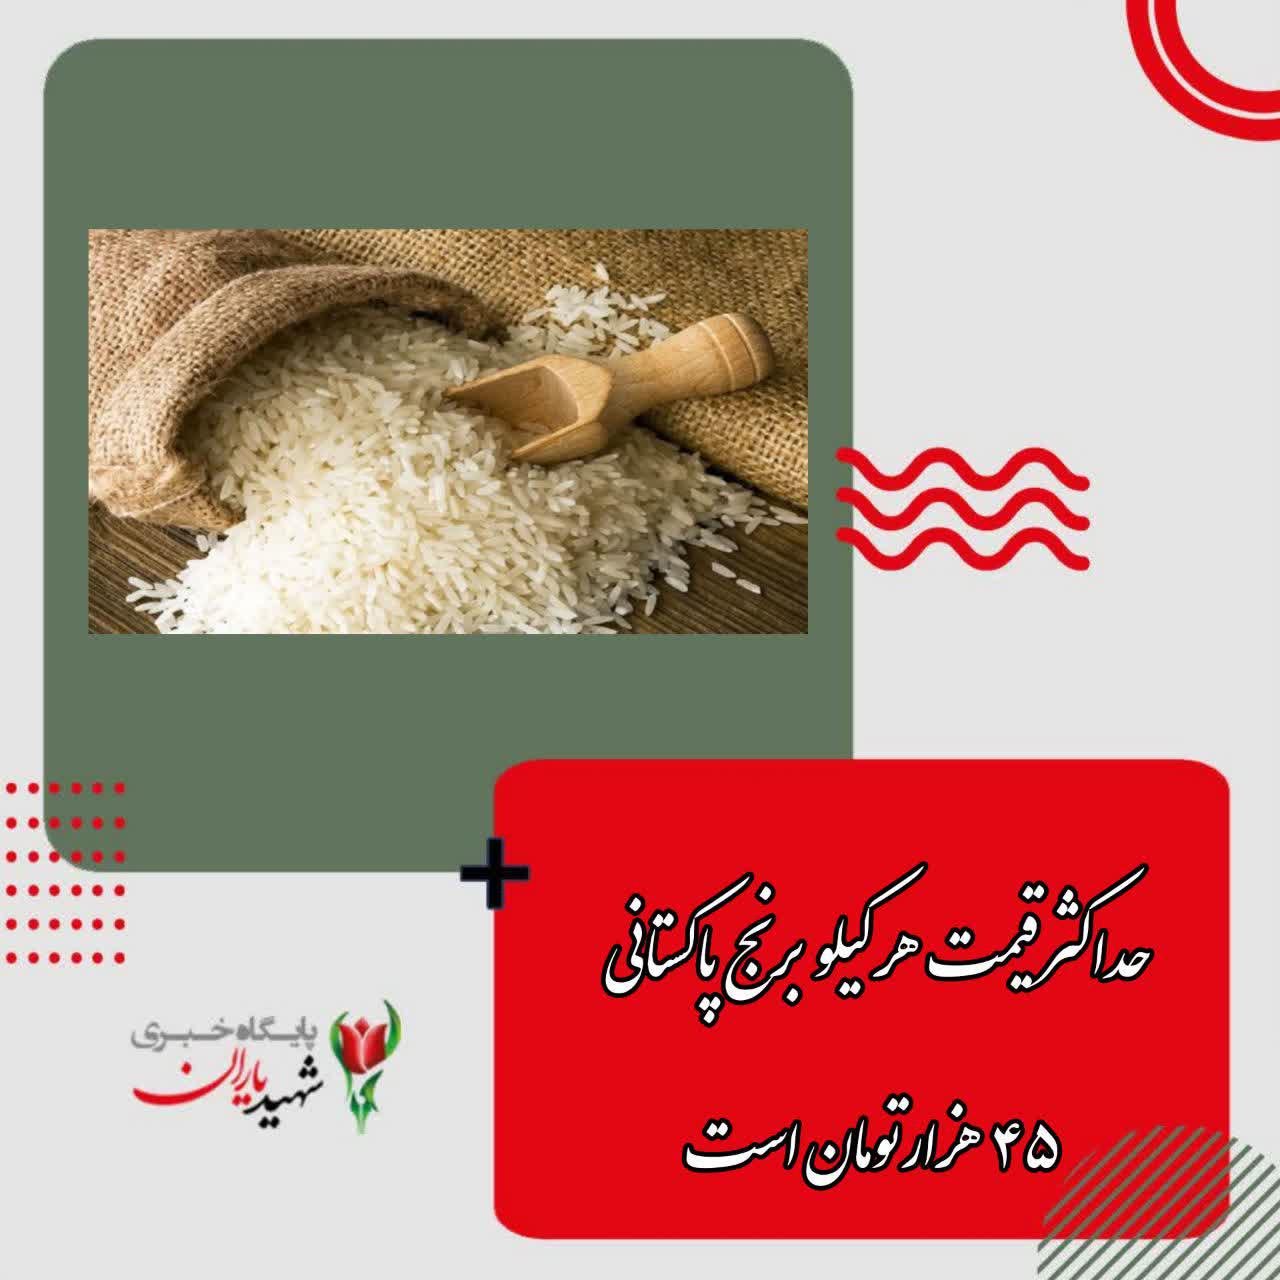 حداکثرقیمت هر کیلو برنج پاکستانی ۴۵ هزارتومان است